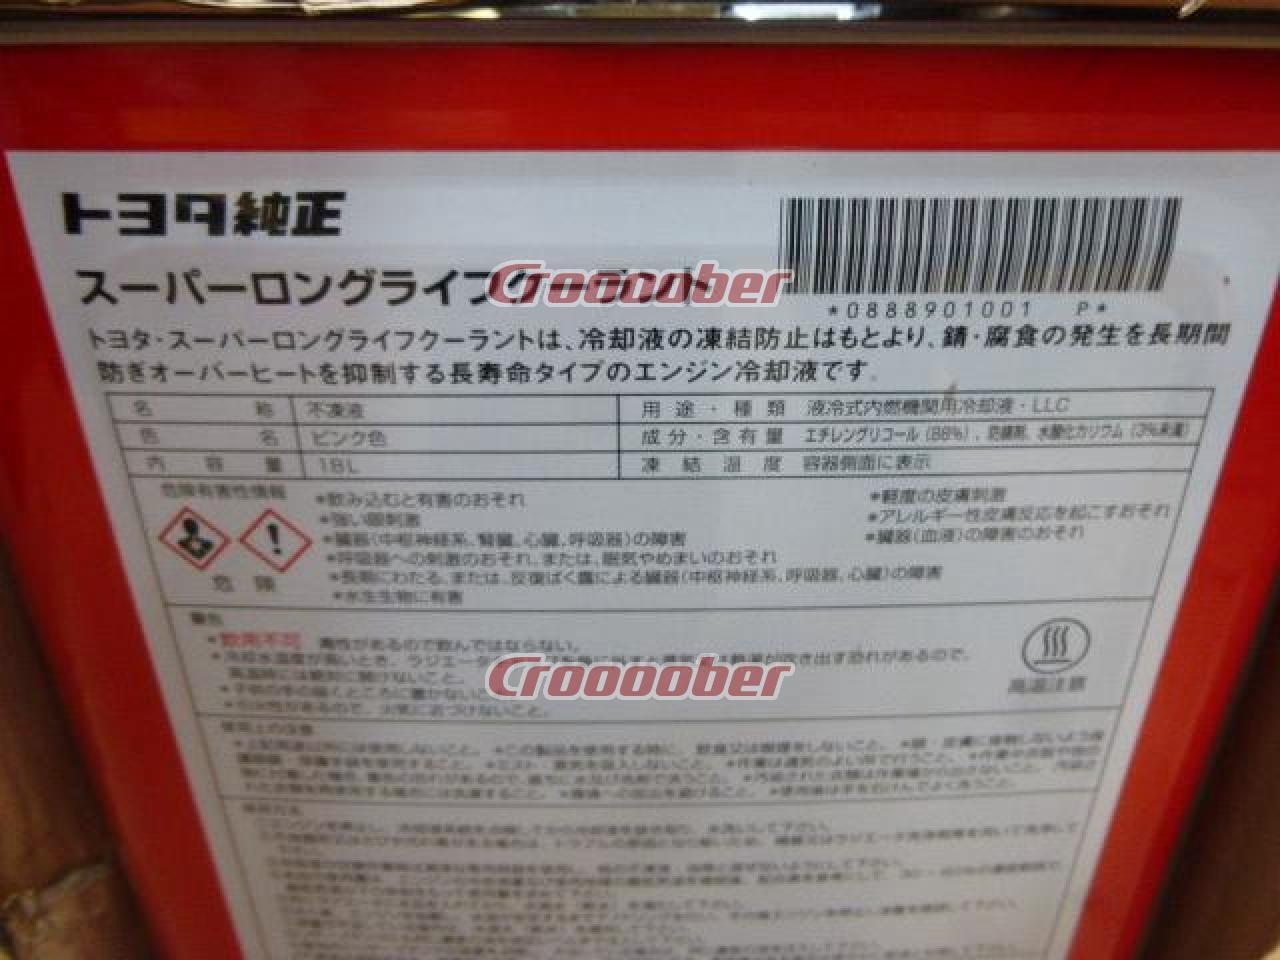 トヨタ スーパーロングライフクーラント 08889-01001  ケミカル用品 オイル(各種)パーツの通販なら  Croooober(クルーバー)